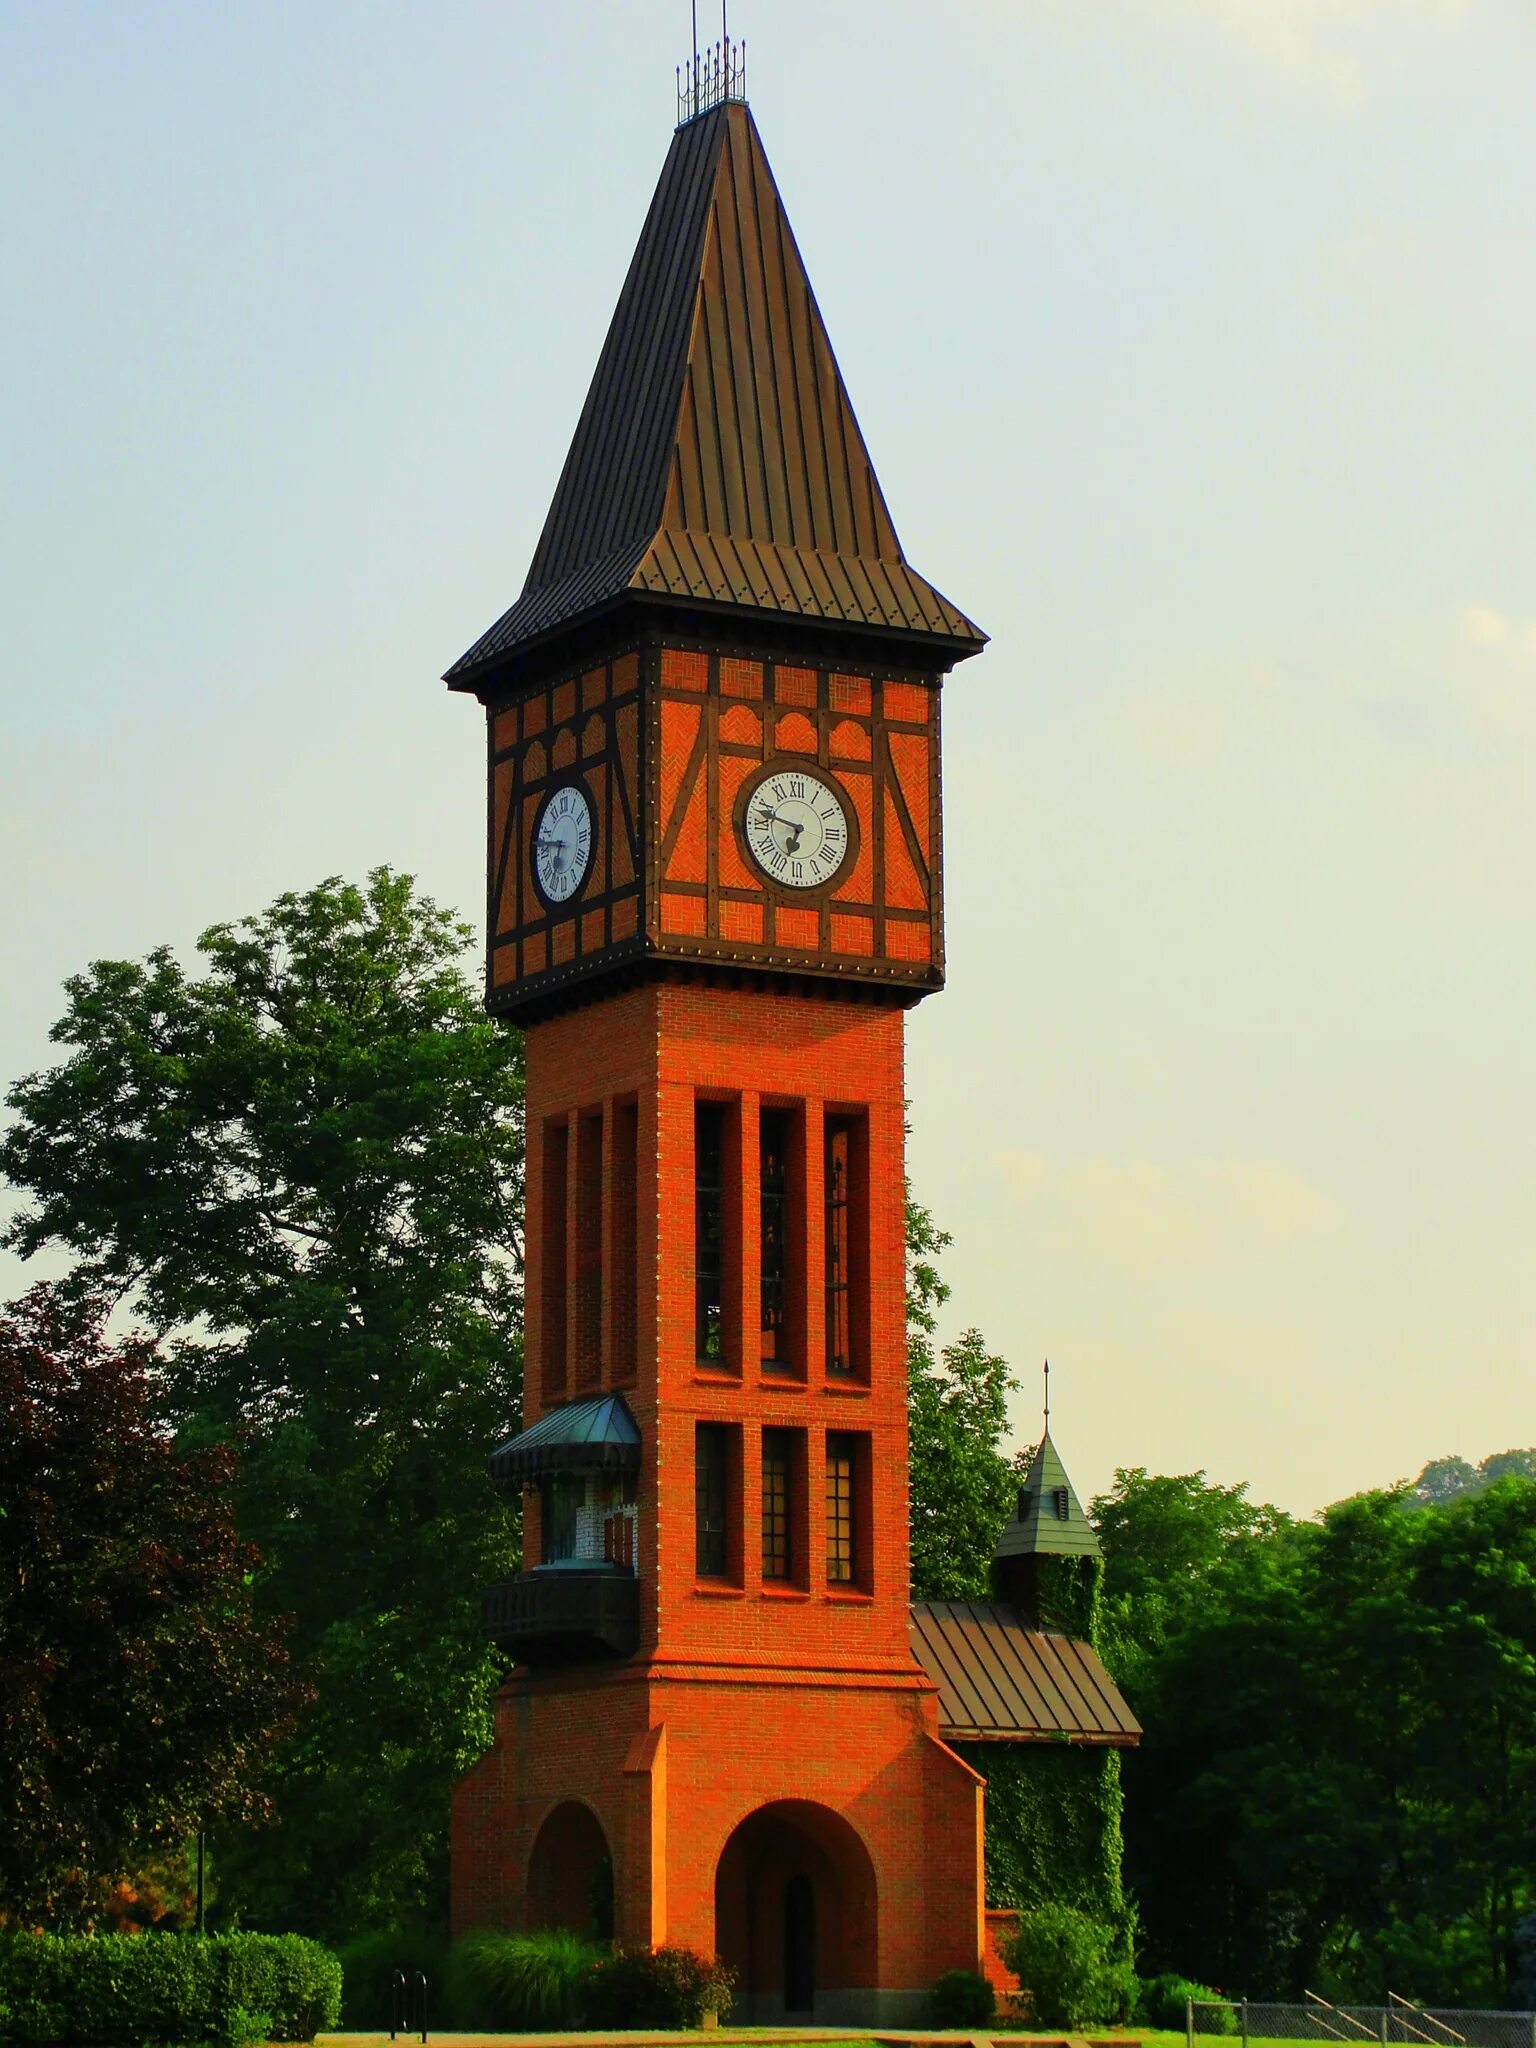 Башня 1 час. Часовая башня Циммер. Часы на башне Тауэр. Часовая башня Зеленоградск. Туапсе башня часовая башня.